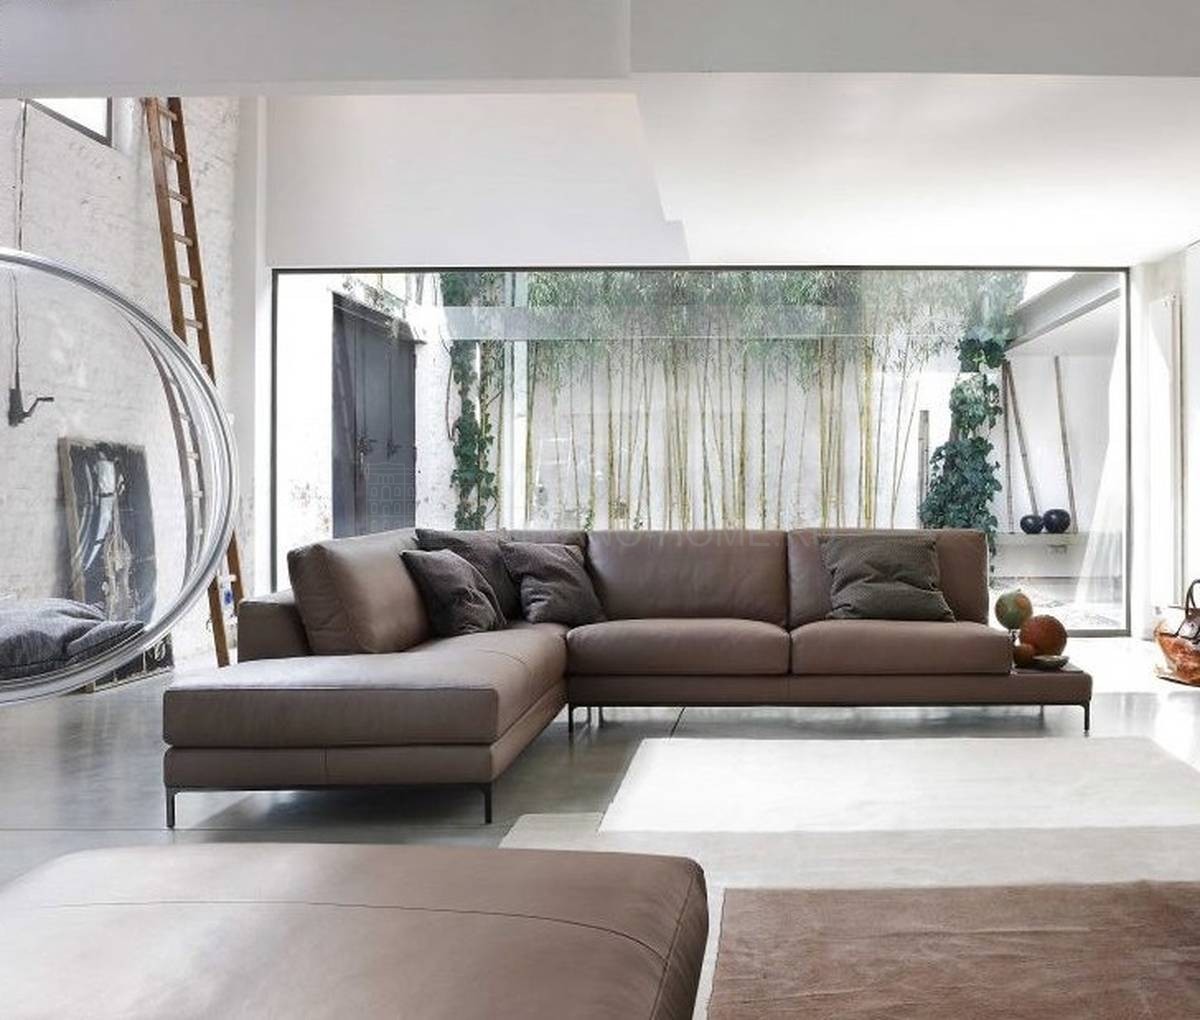 Модульный диван Artis leather из Италии фабрики DITRE ITALIA